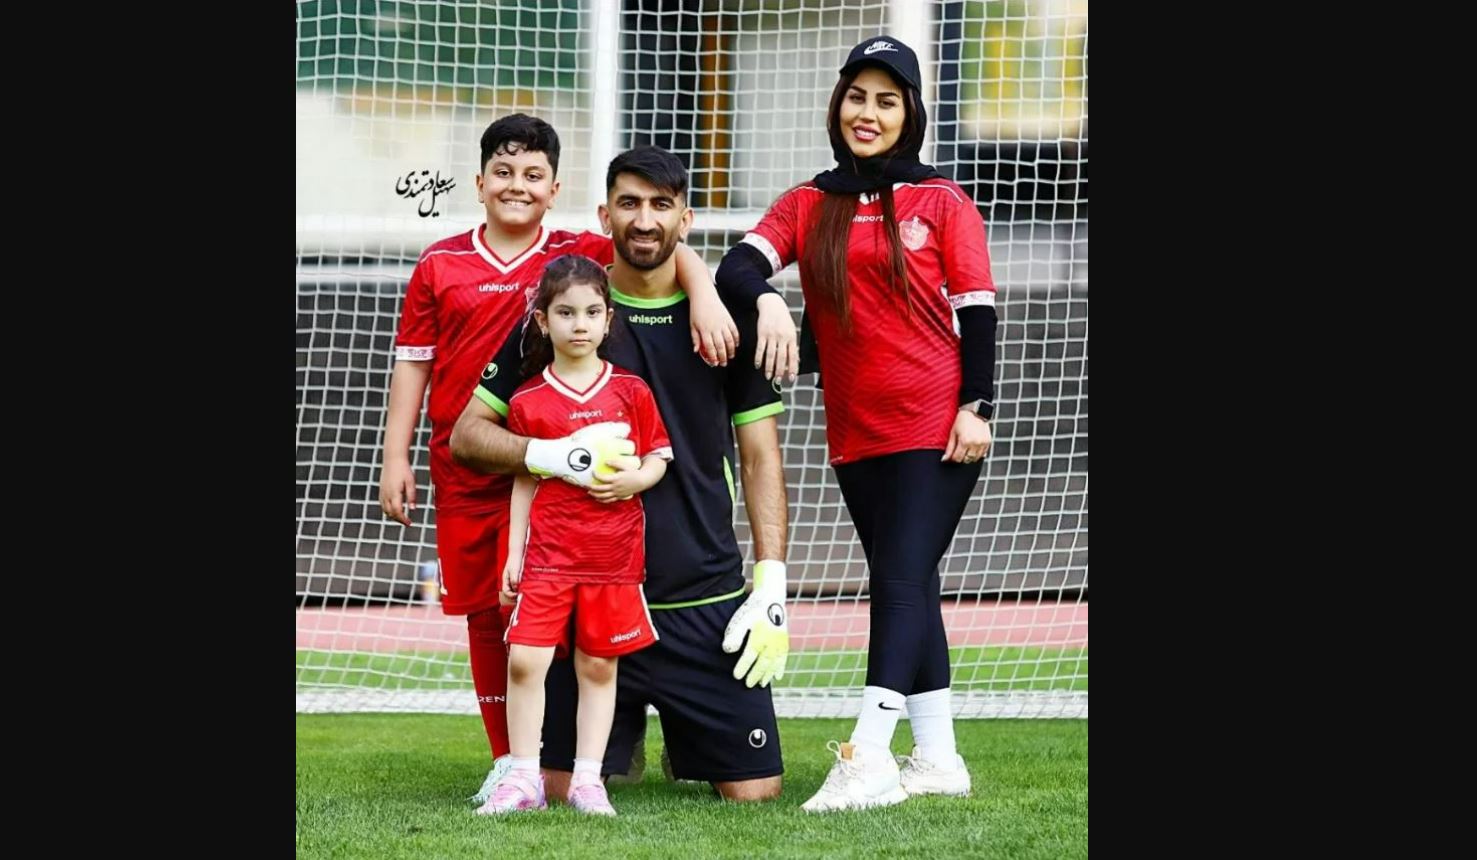 فوتبال بازی کردن علیرضا بیرانوند با همسر و فرزندانش وسط ورزشگاه! + فیلم